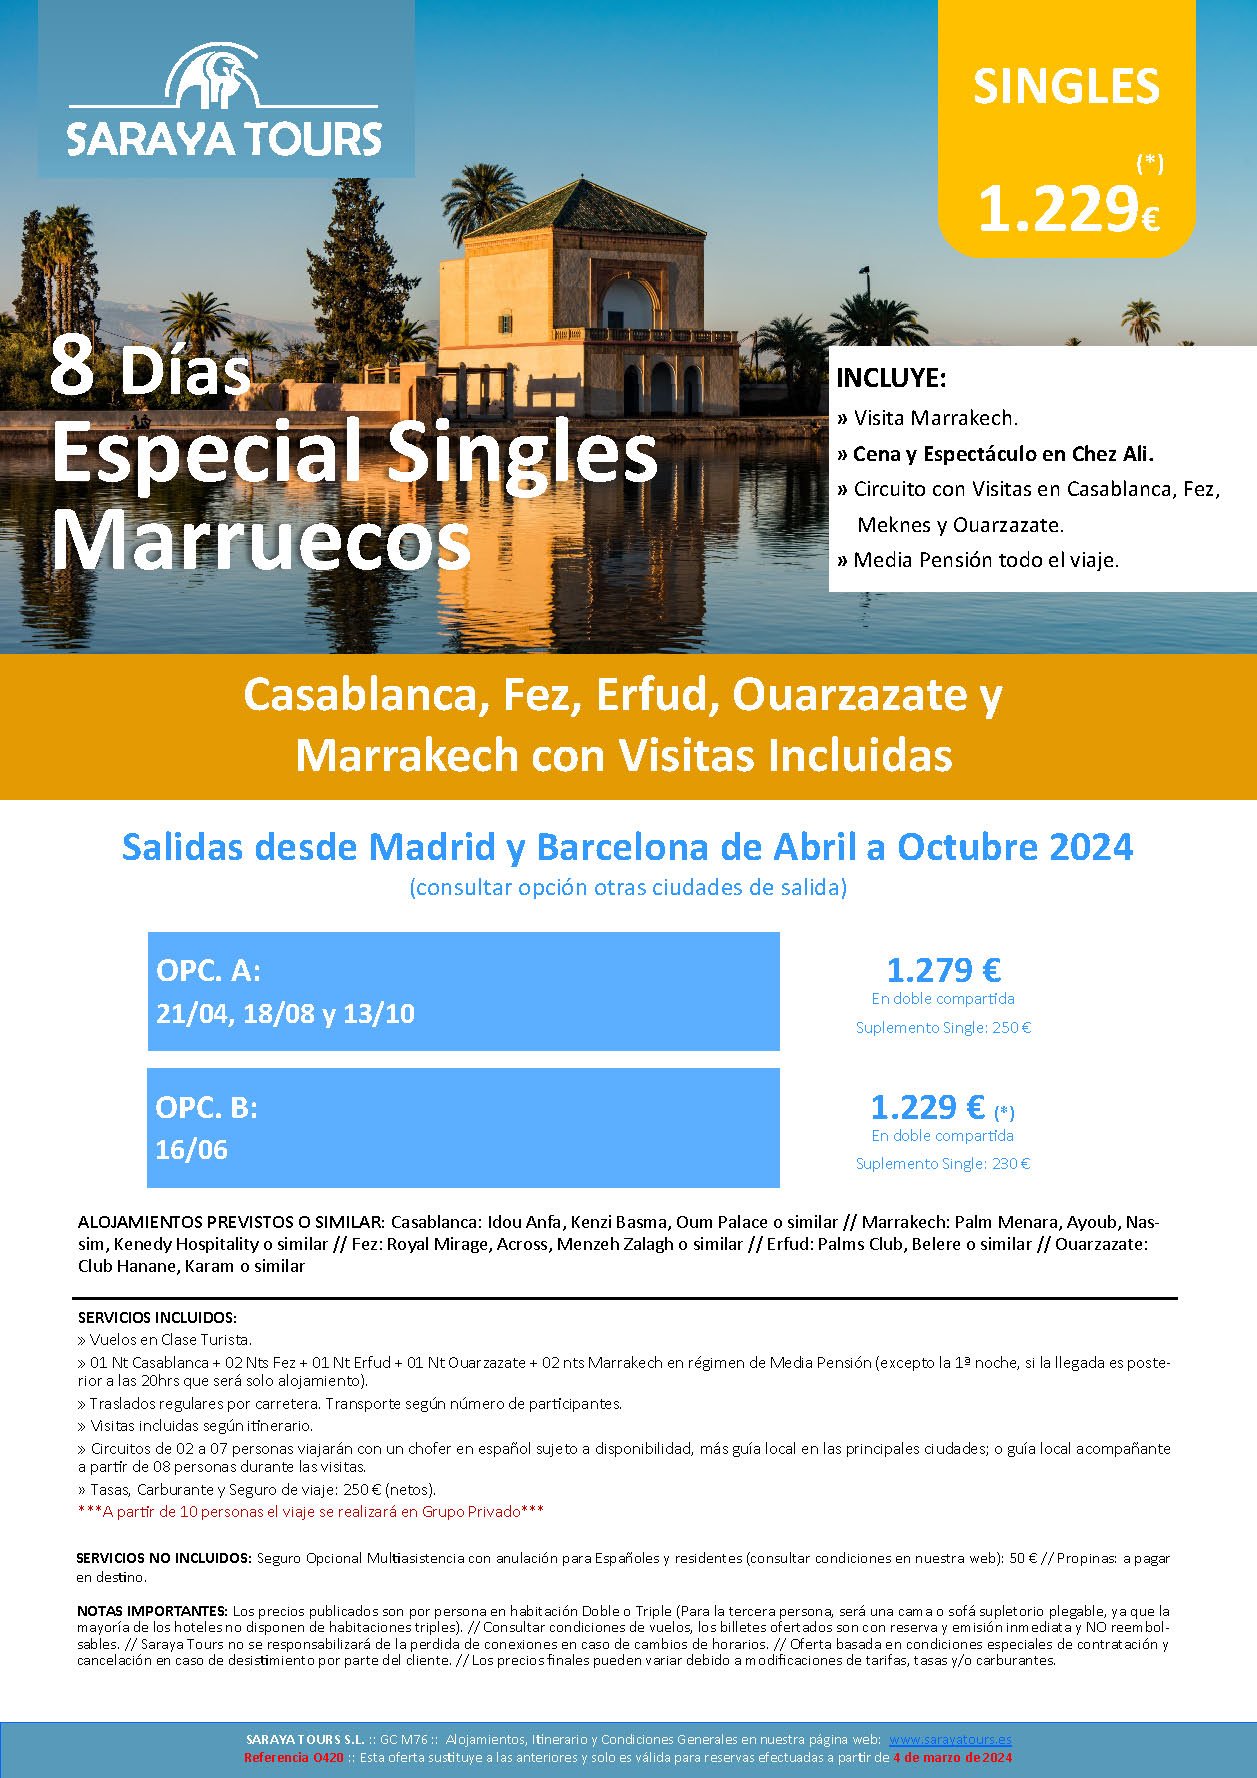 Oferta Saraya Tours Circuito Marruecos 8 dias Especial Singles salidas Abril a Octubre 2024 en vuelo directo desde Madrid Barcelona